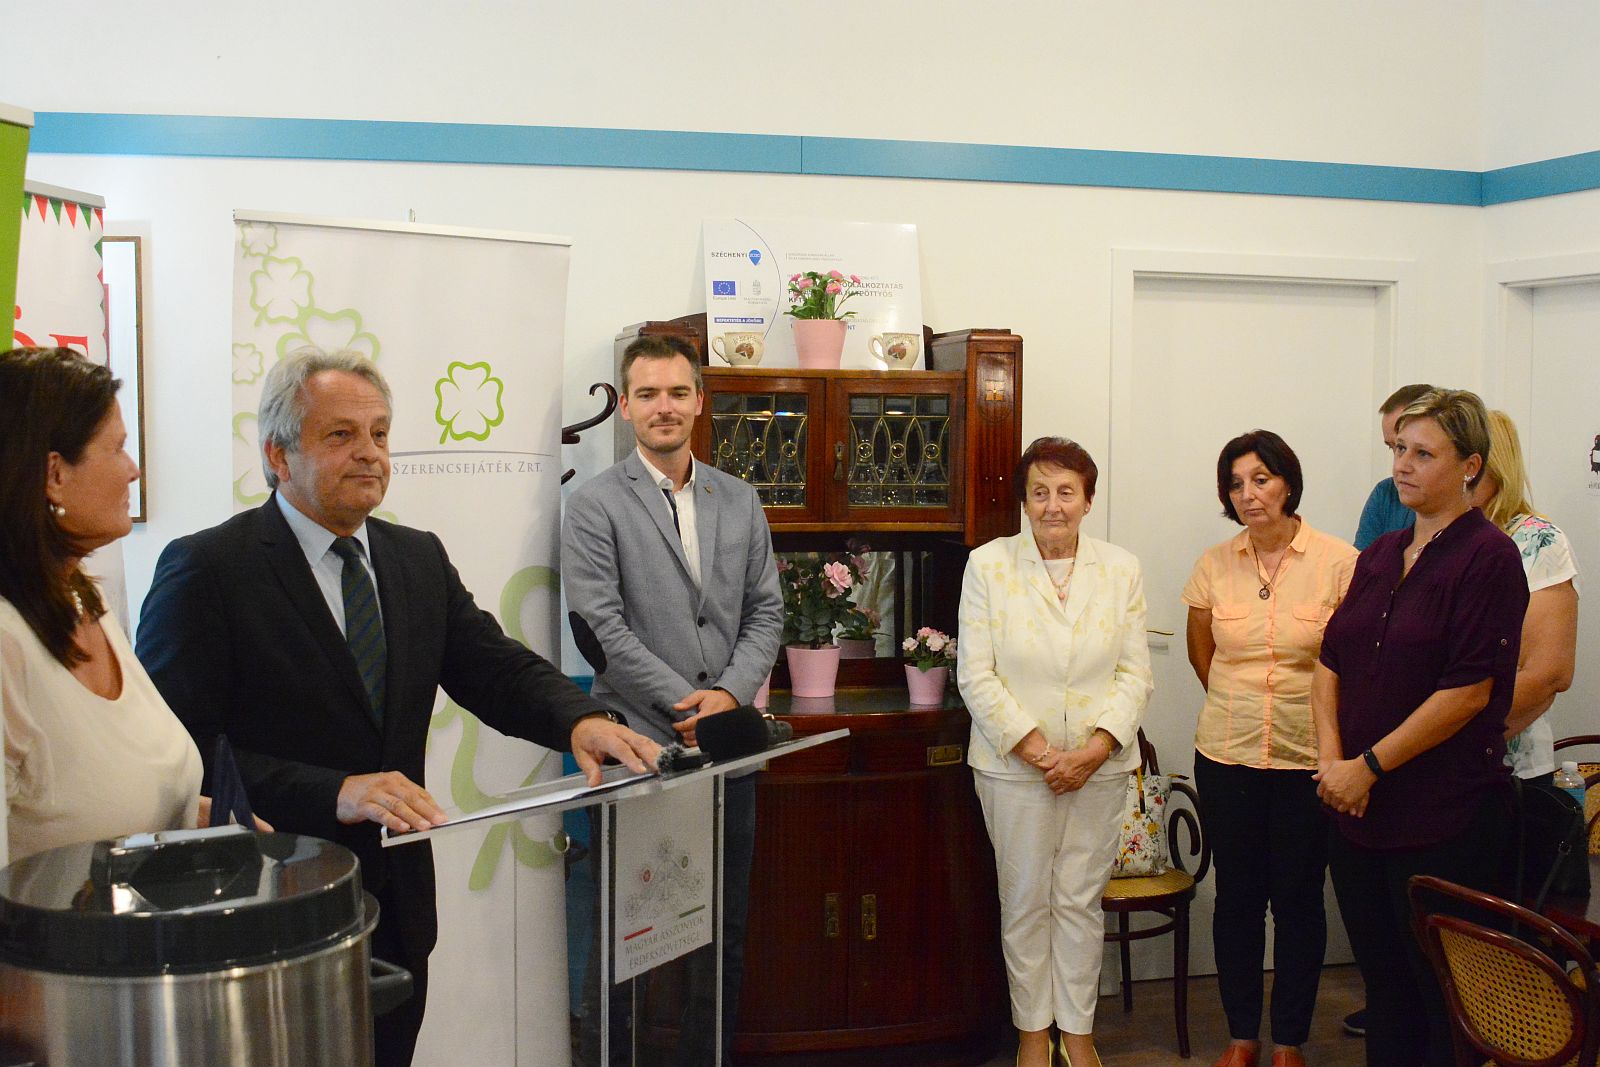 Befőzőautomatákat és aszalógépeket kapott öt fehérvári szervezet a Civil Összefogás Fórumtól